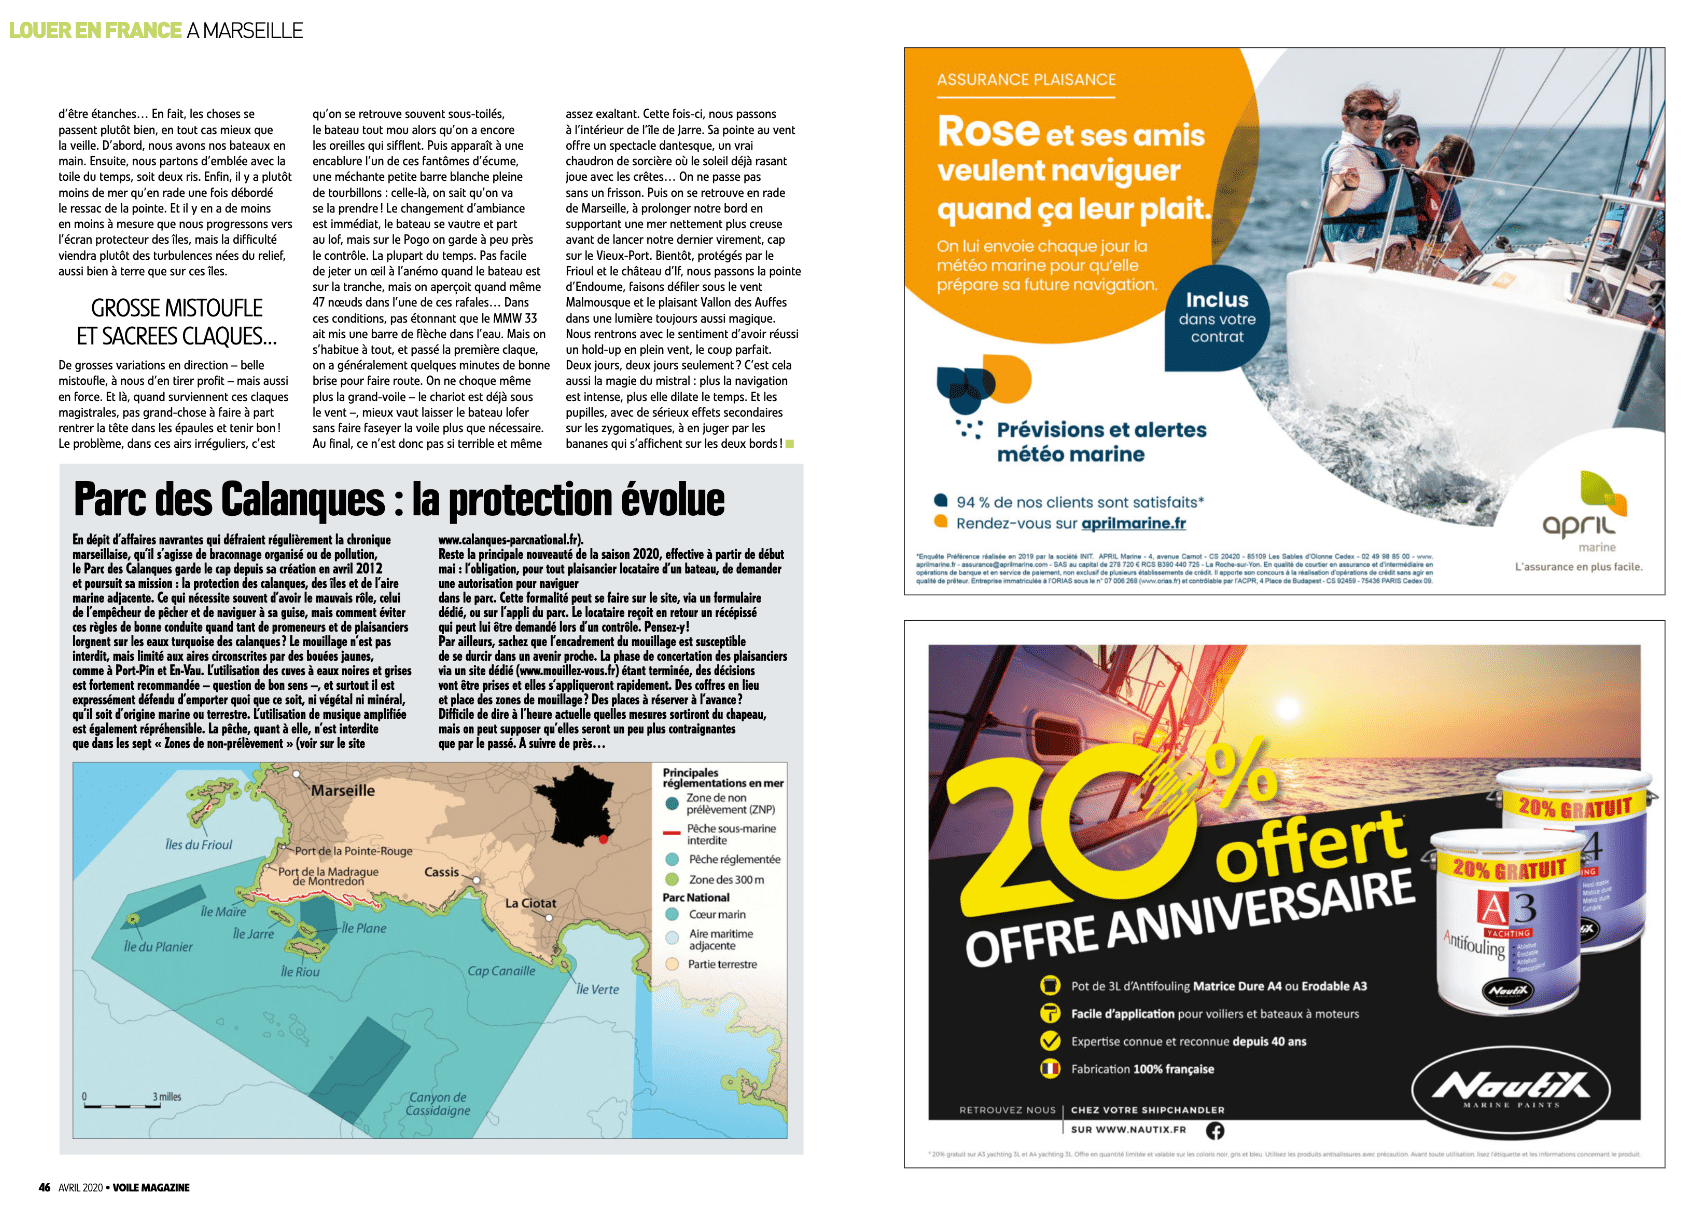 05 - Louer en France le temps d'un week-end (Voile Magazine Avril 2020)